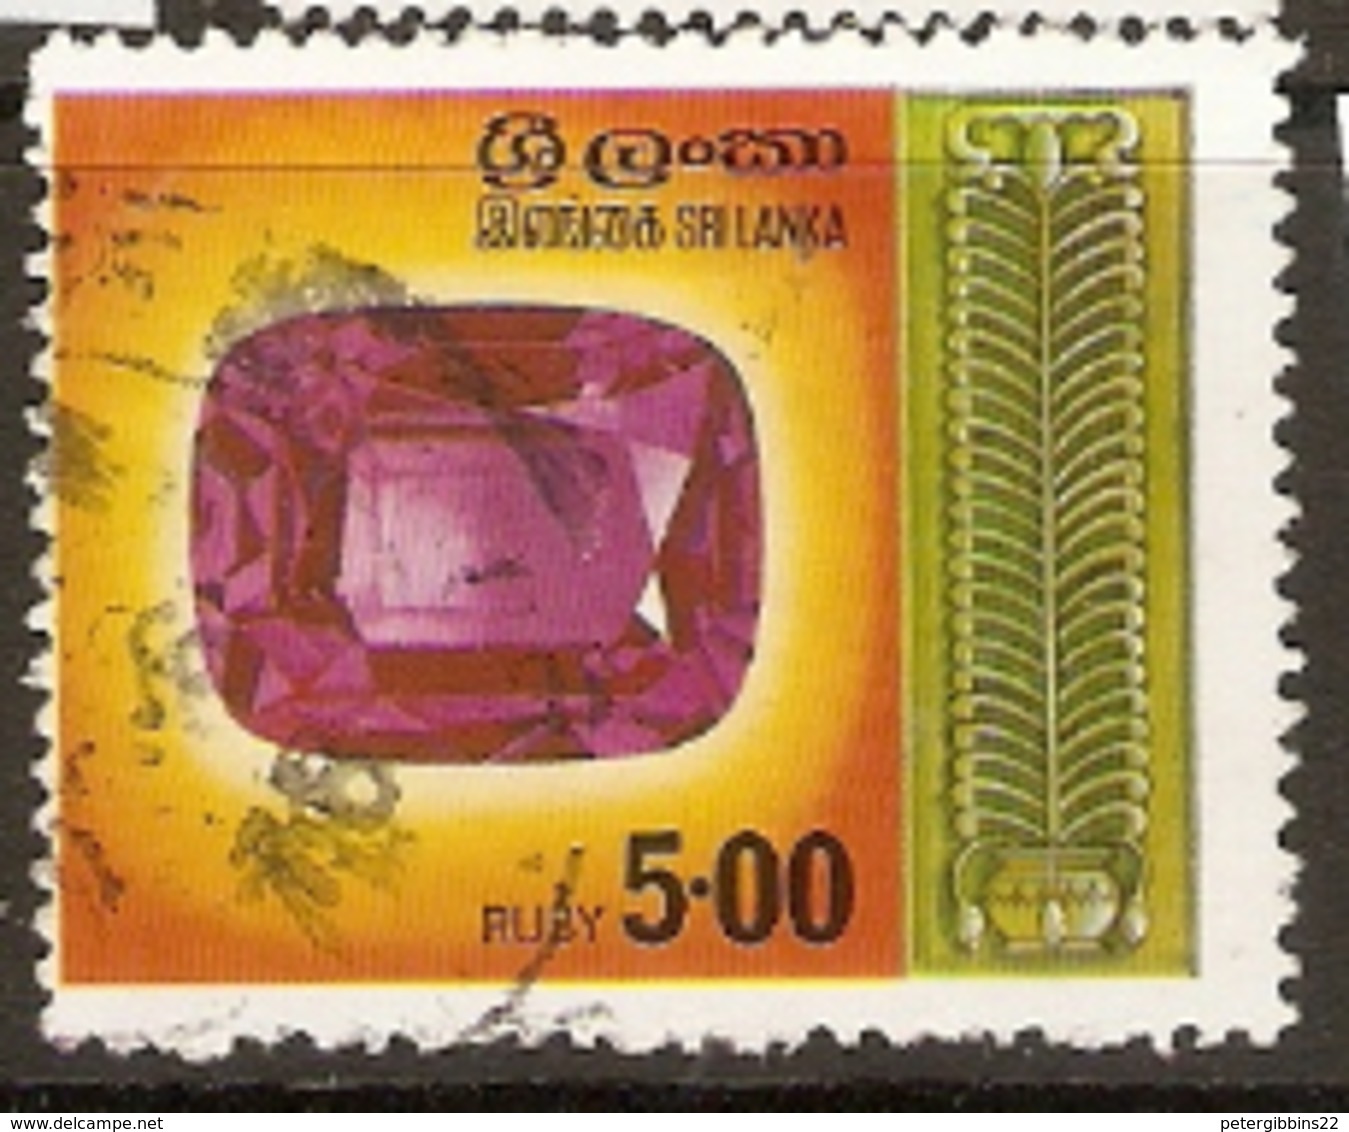 Sri-Lanka  1976   SG  628  Rubies    Fine Used - Sri Lanka (Ceylon) (1948-...)